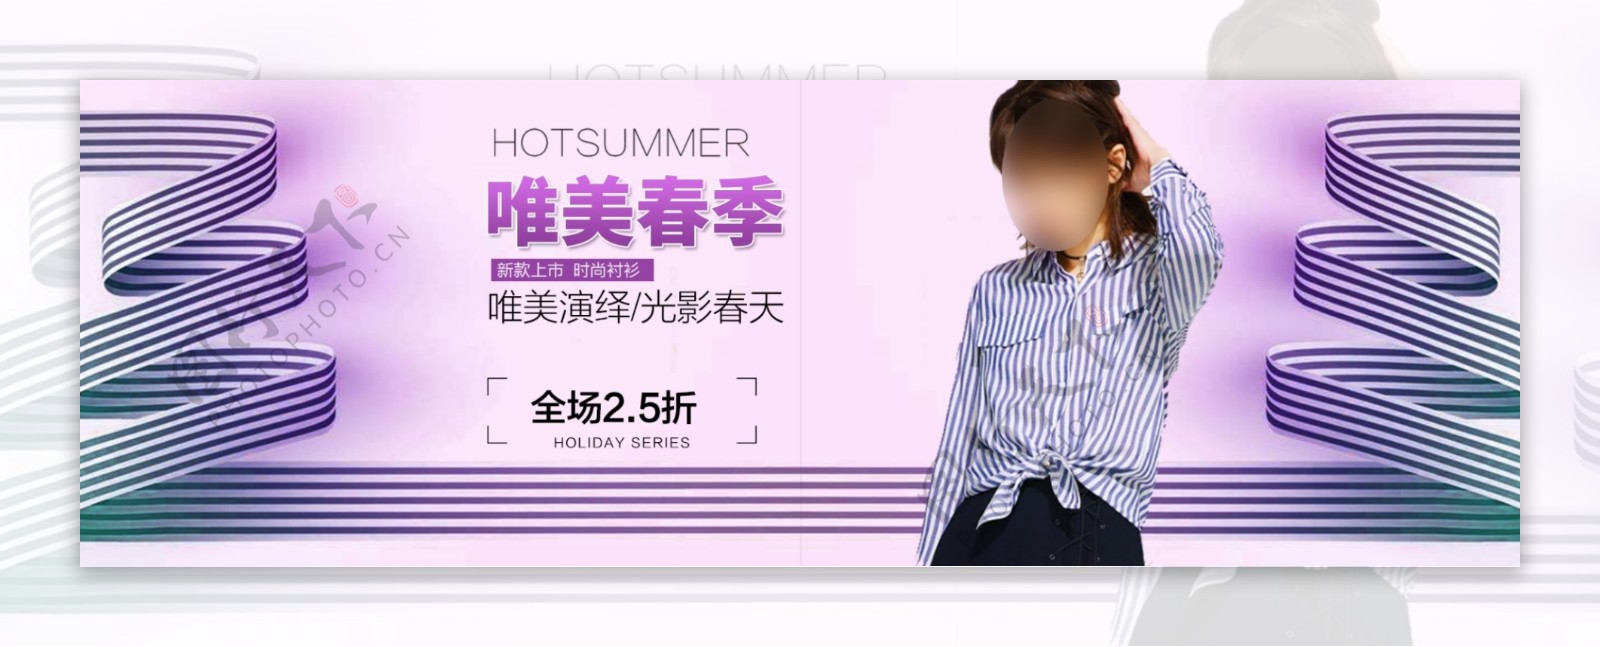 紫色卷带简约唯美春季时尚衬衫女装淘宝电商海报